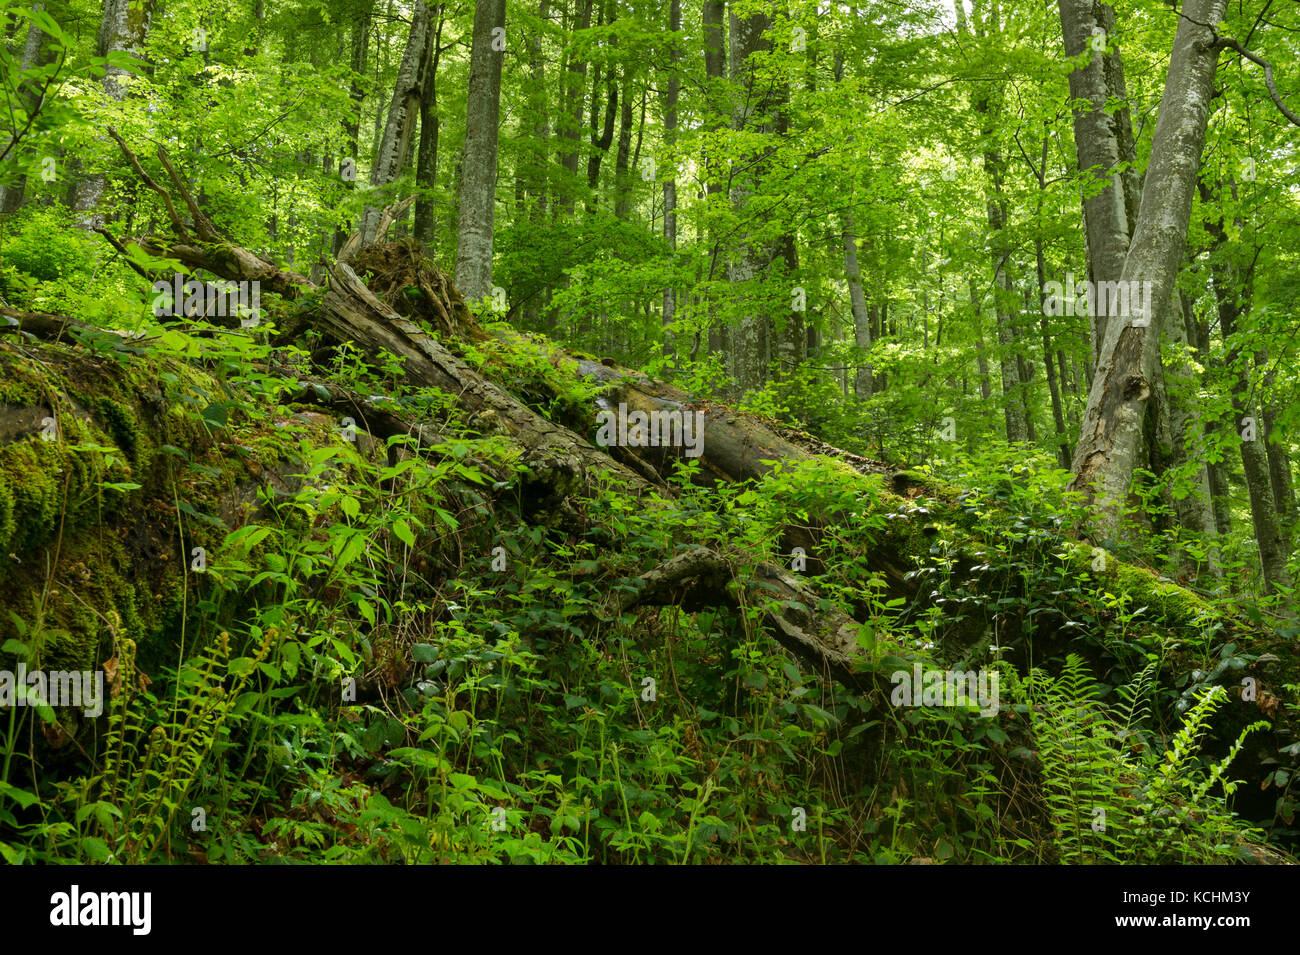 Nationalpark Domogled -Valea Cernei / Rumänien: Hoher Biodiversität und hoher Klimawert Primärwald (Buche) im UNESCO-Weltkulturerbe. Stockfoto